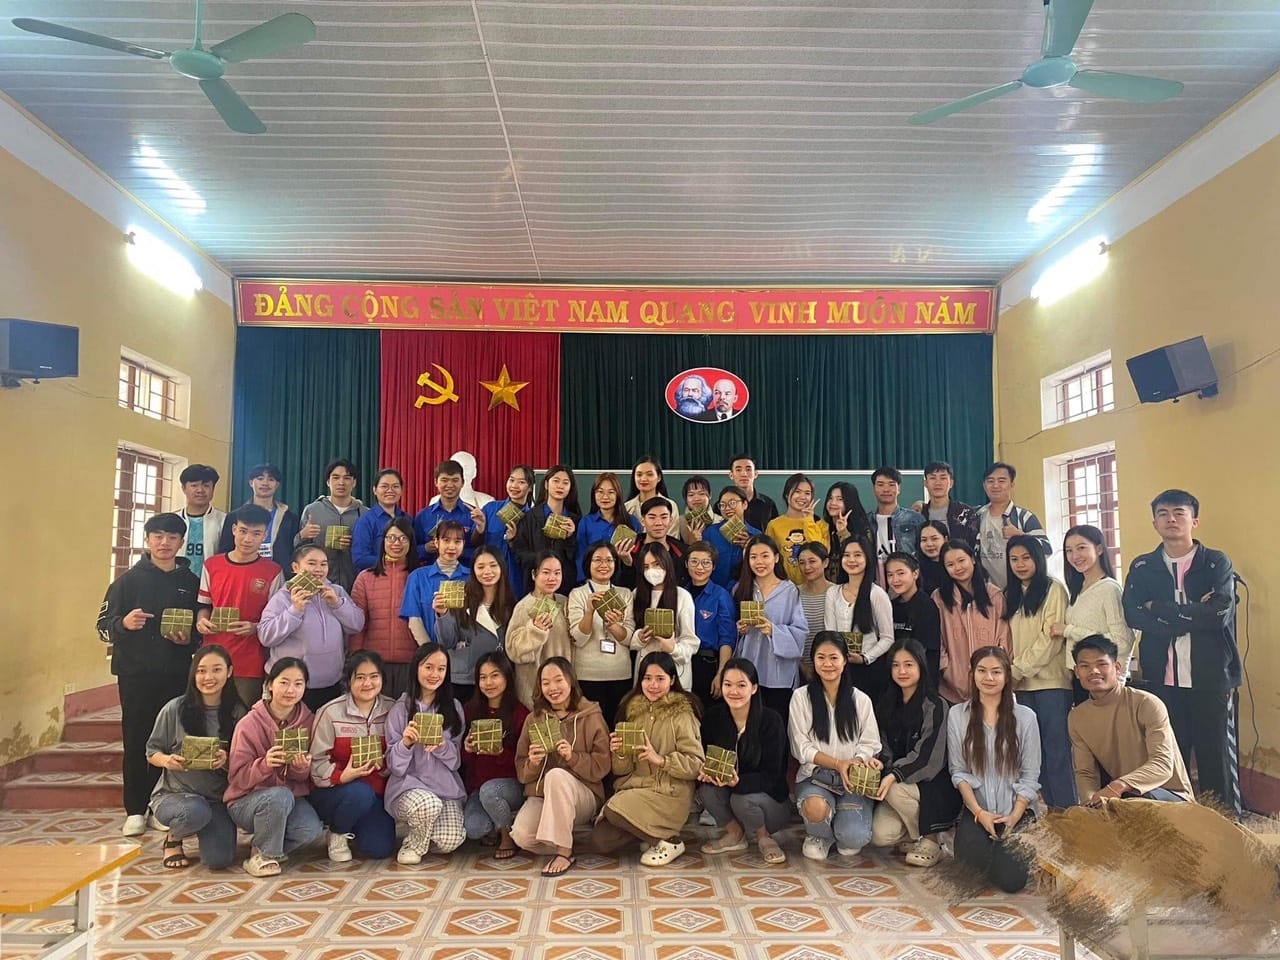 Chương trình tặng quà nhân dịp Kỷ niệm 73 năm ngày Truyền thống học sinh, sinh viên Việt Nam (9/01/1950 - 9/01/2023)